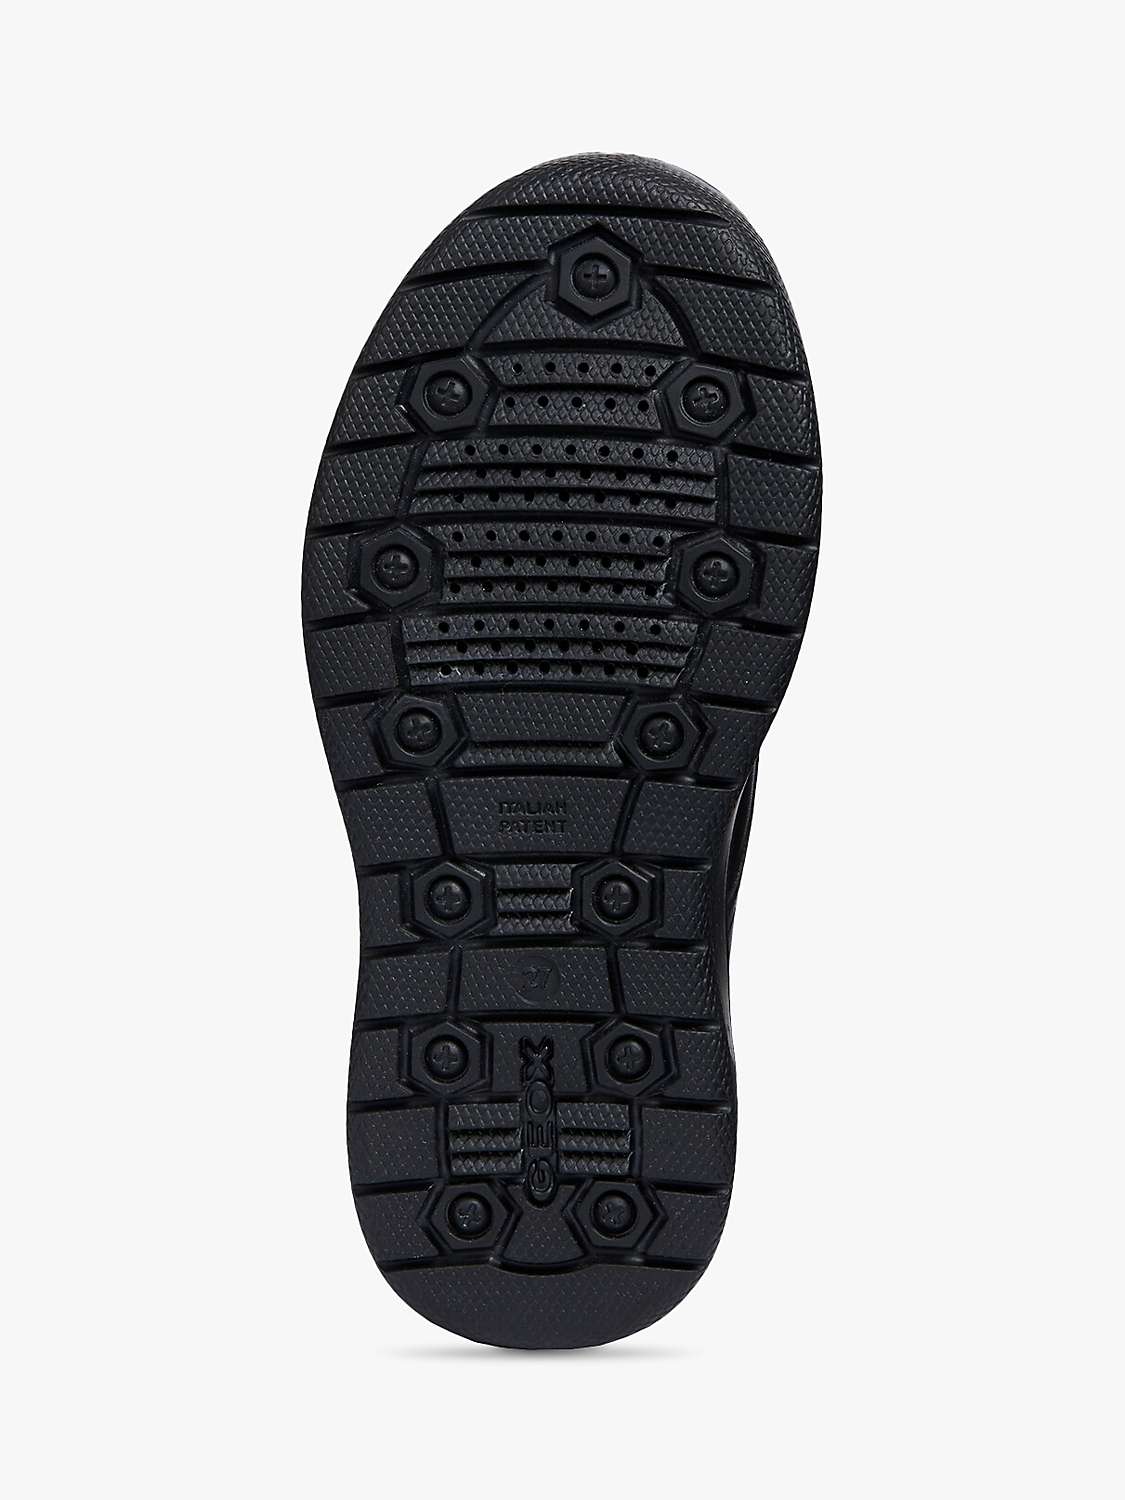 Buy Geox Kids' J Riddock Riptape Shoes, Black Online at johnlewis.com